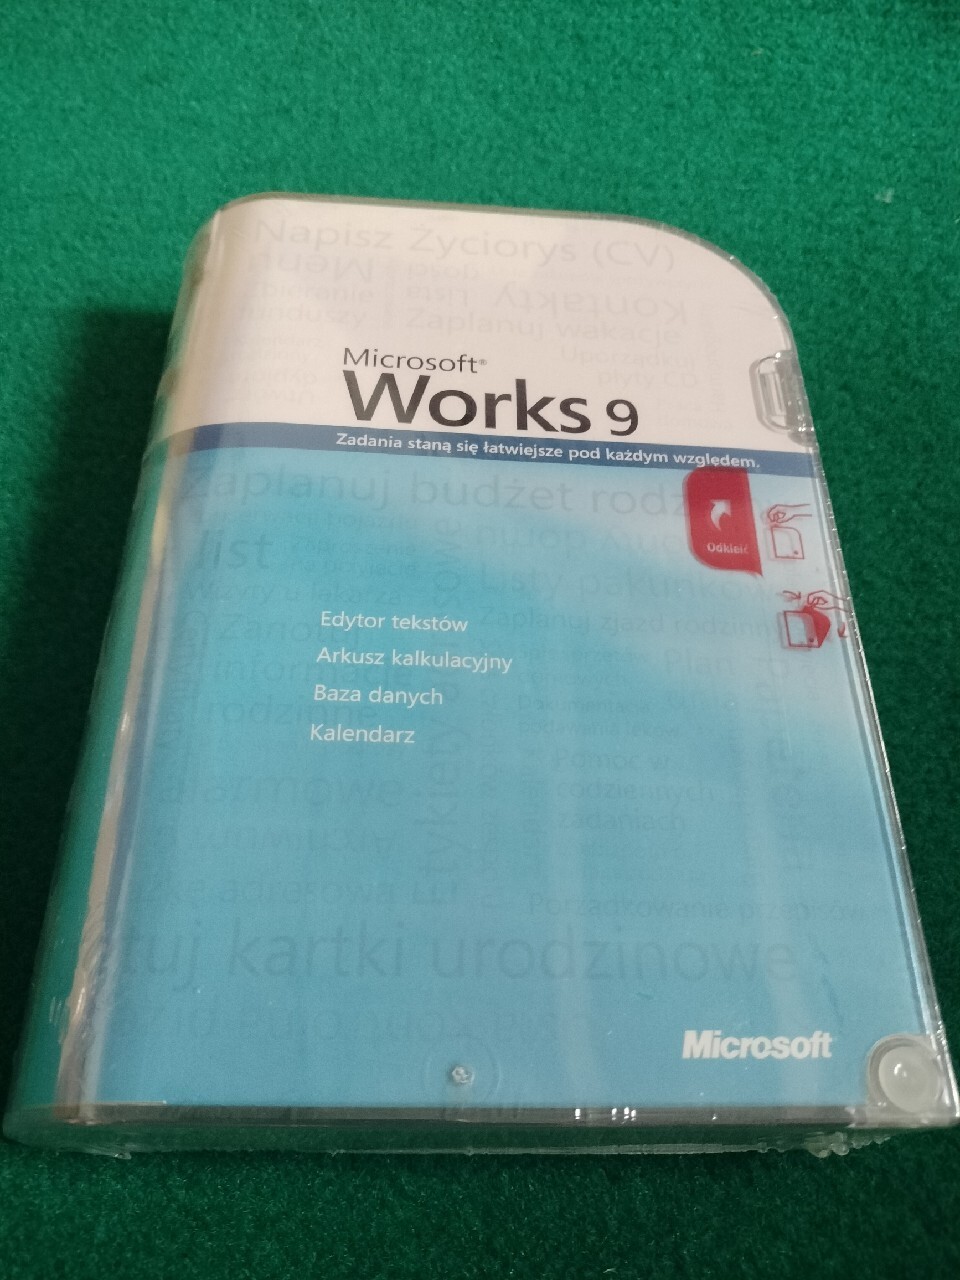 Microsoft Works 9 Wersja Box Nowy Kraków Kup Teraz Na Allegro